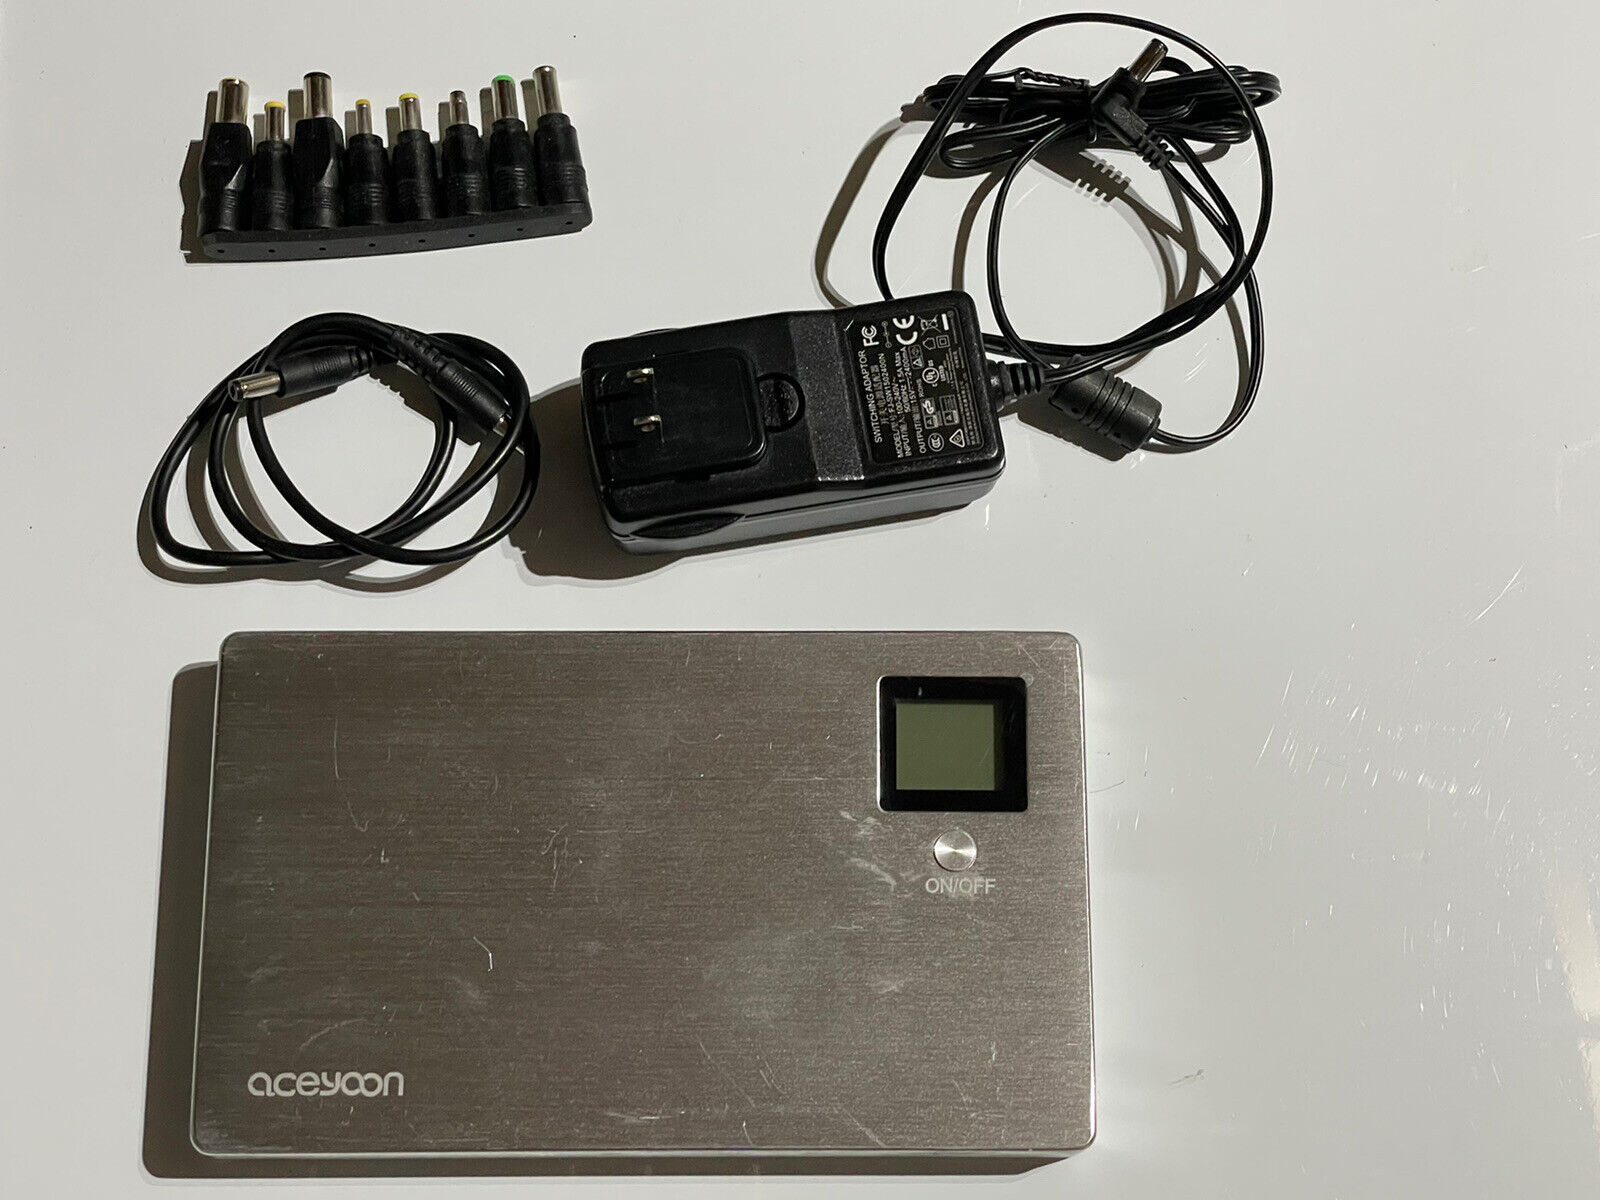 Aceyoon 50000mAh Laptop Power Bank - External Battery - Notebook Power Bank